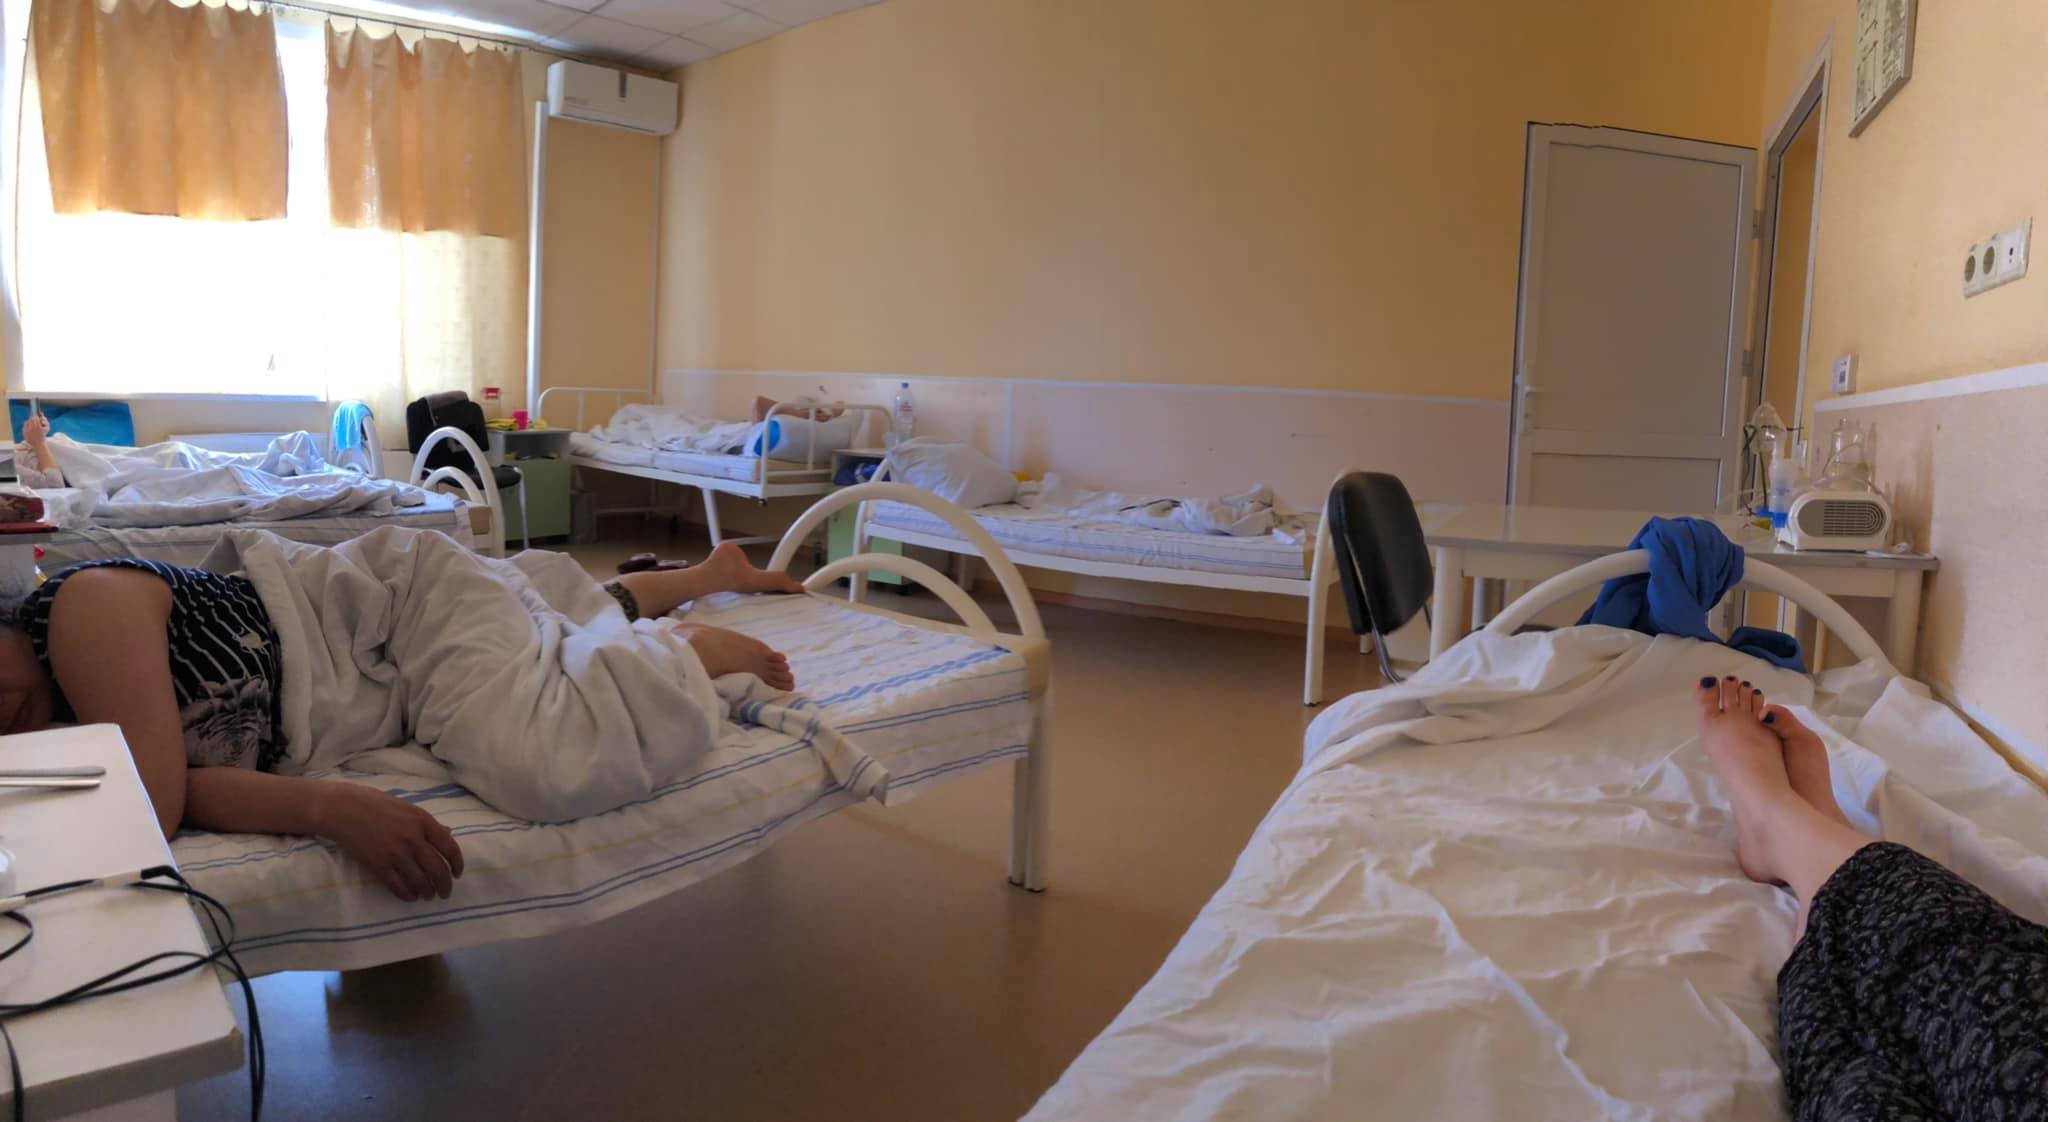 Karmen Karma в тонком белье демонстрирует себя в больнице